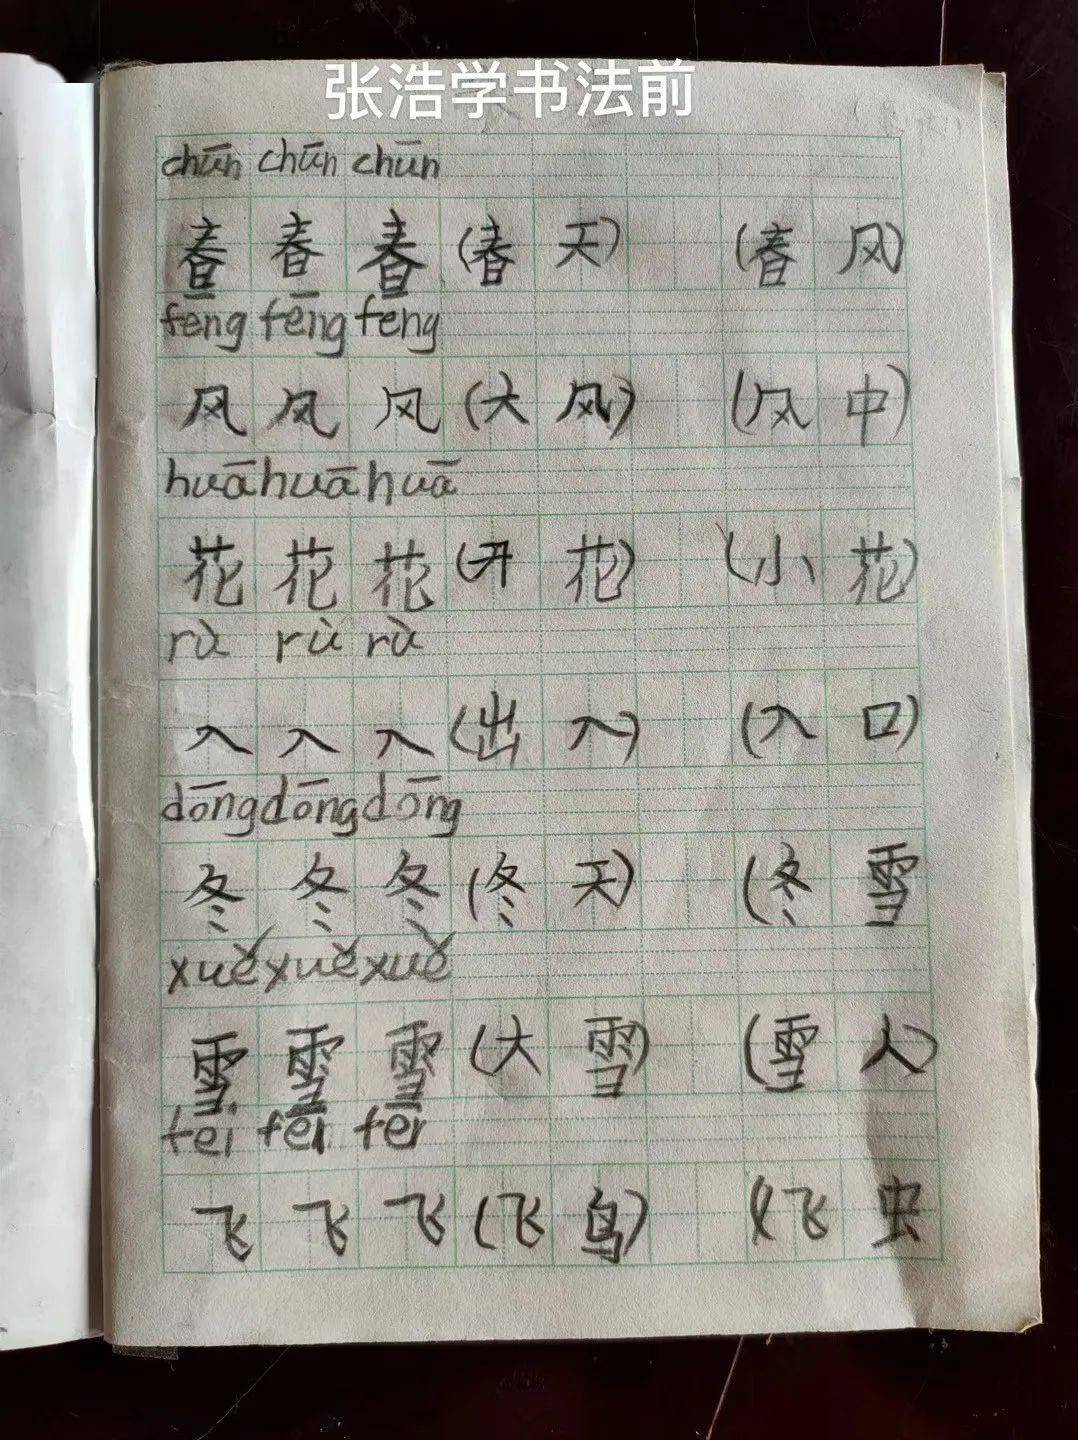 上新闻峨眉8岁男孩手写印刷体汉字走红网络背后的原因